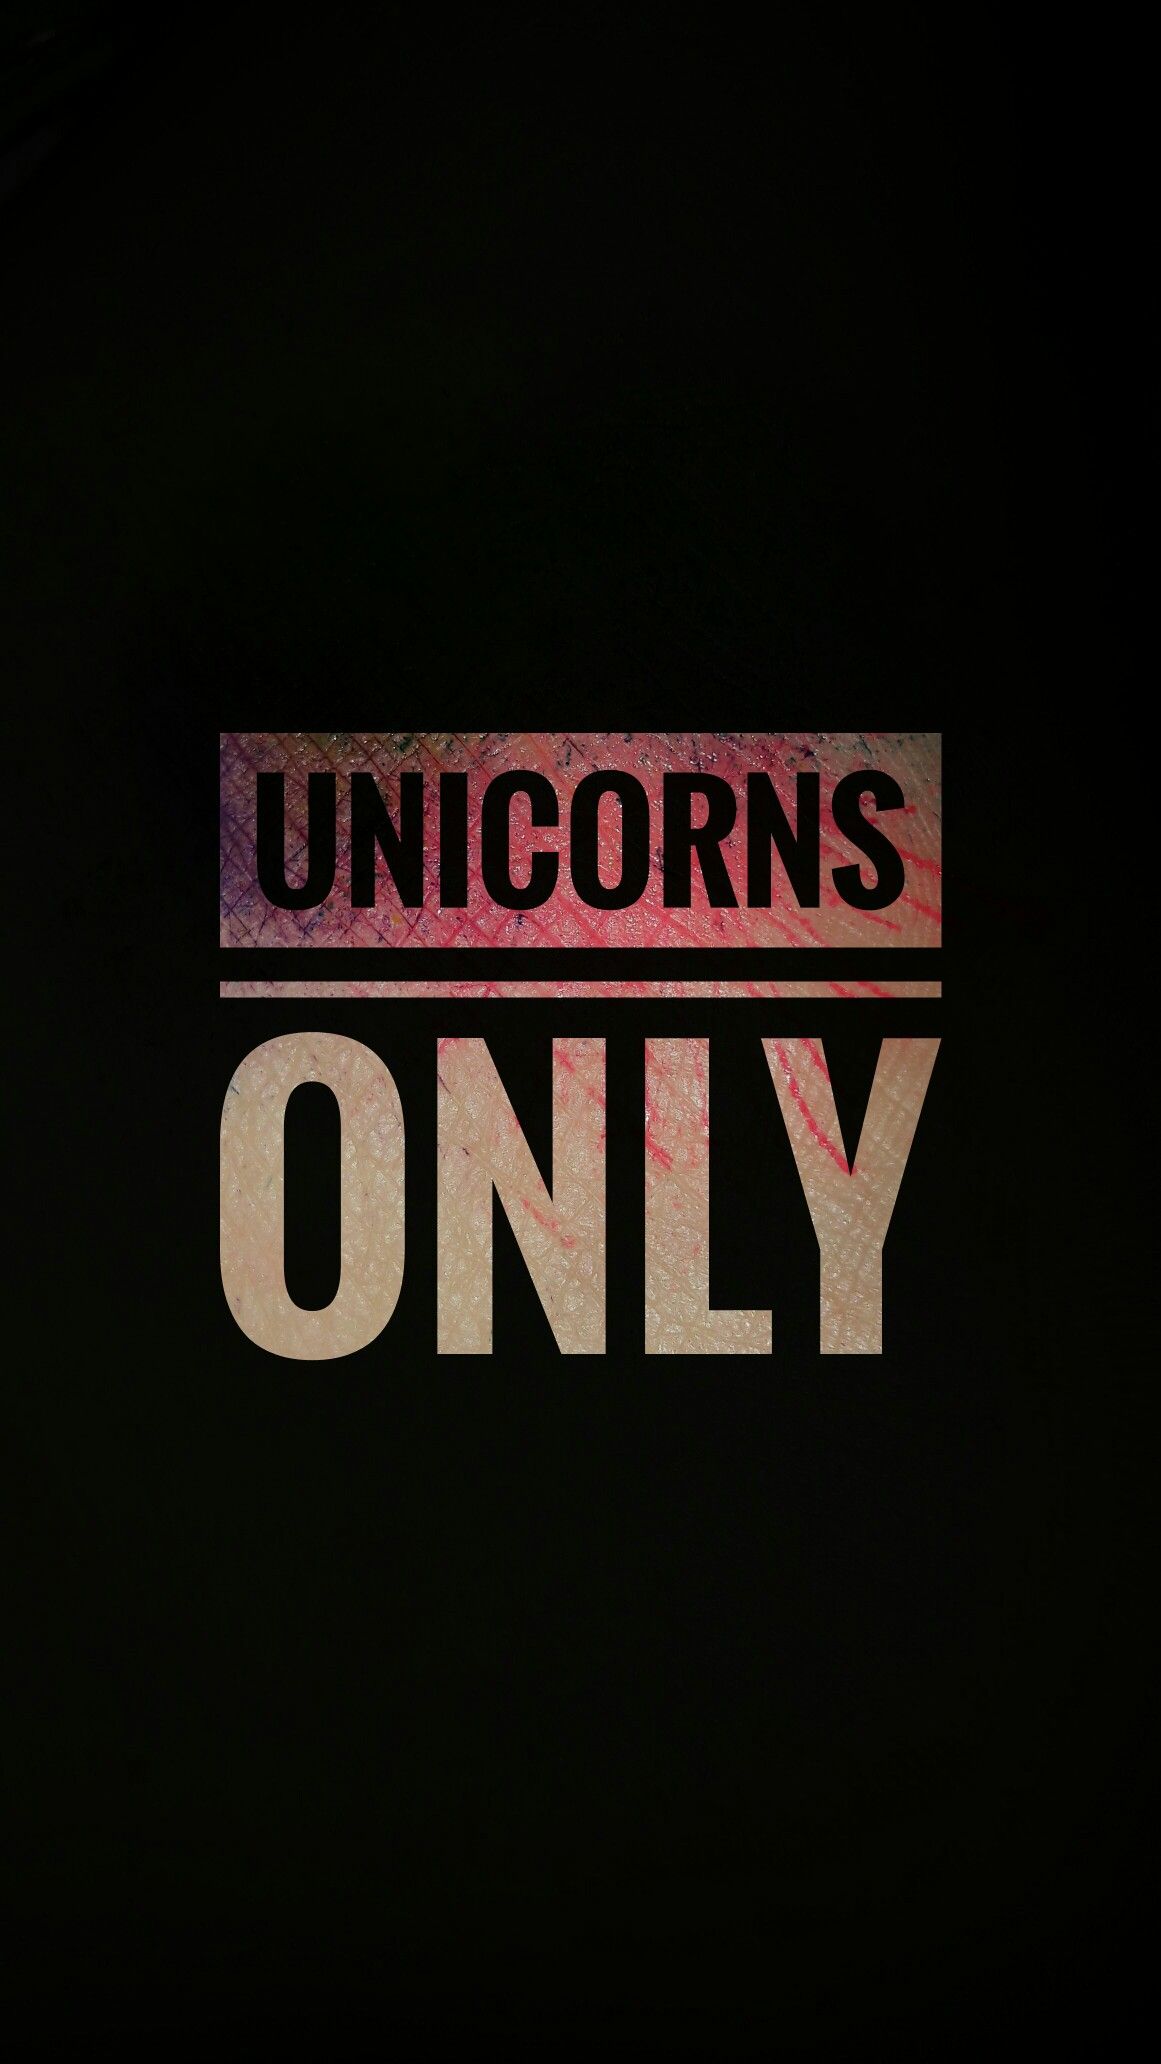 Unicorn inspired wallpaper. Like for more❤ #unicorn #wallpaper #iphone